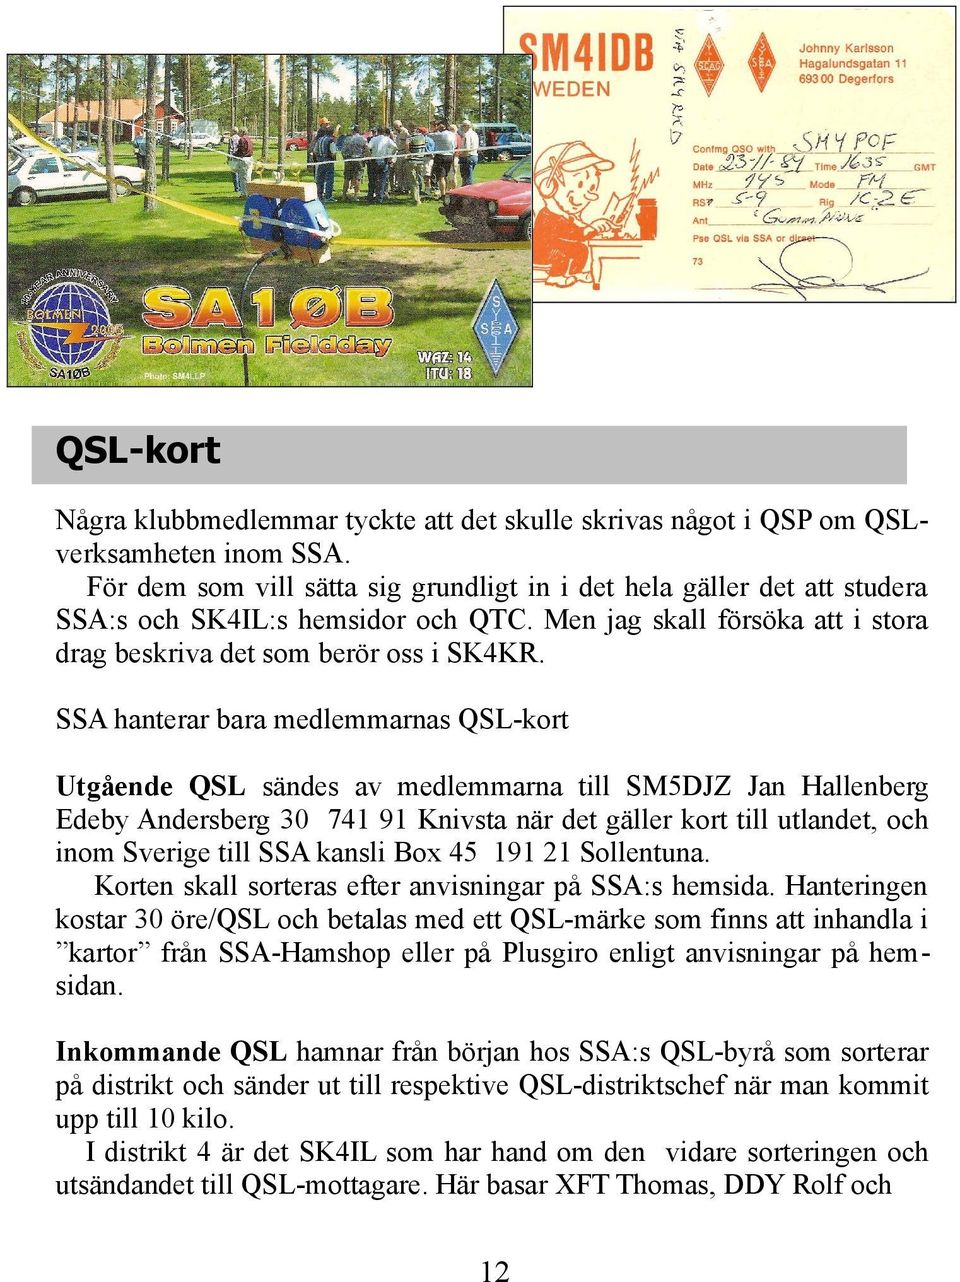 SSA hanterar bara medlemmarnas QSL-kort Utgående QSL sändes av medlemmarna till SM5DJZ Jan Hallenberg Edeby Andersberg 30 741 91 Knivsta när det gäller kort till utlandet, och inom Sverige till SSA